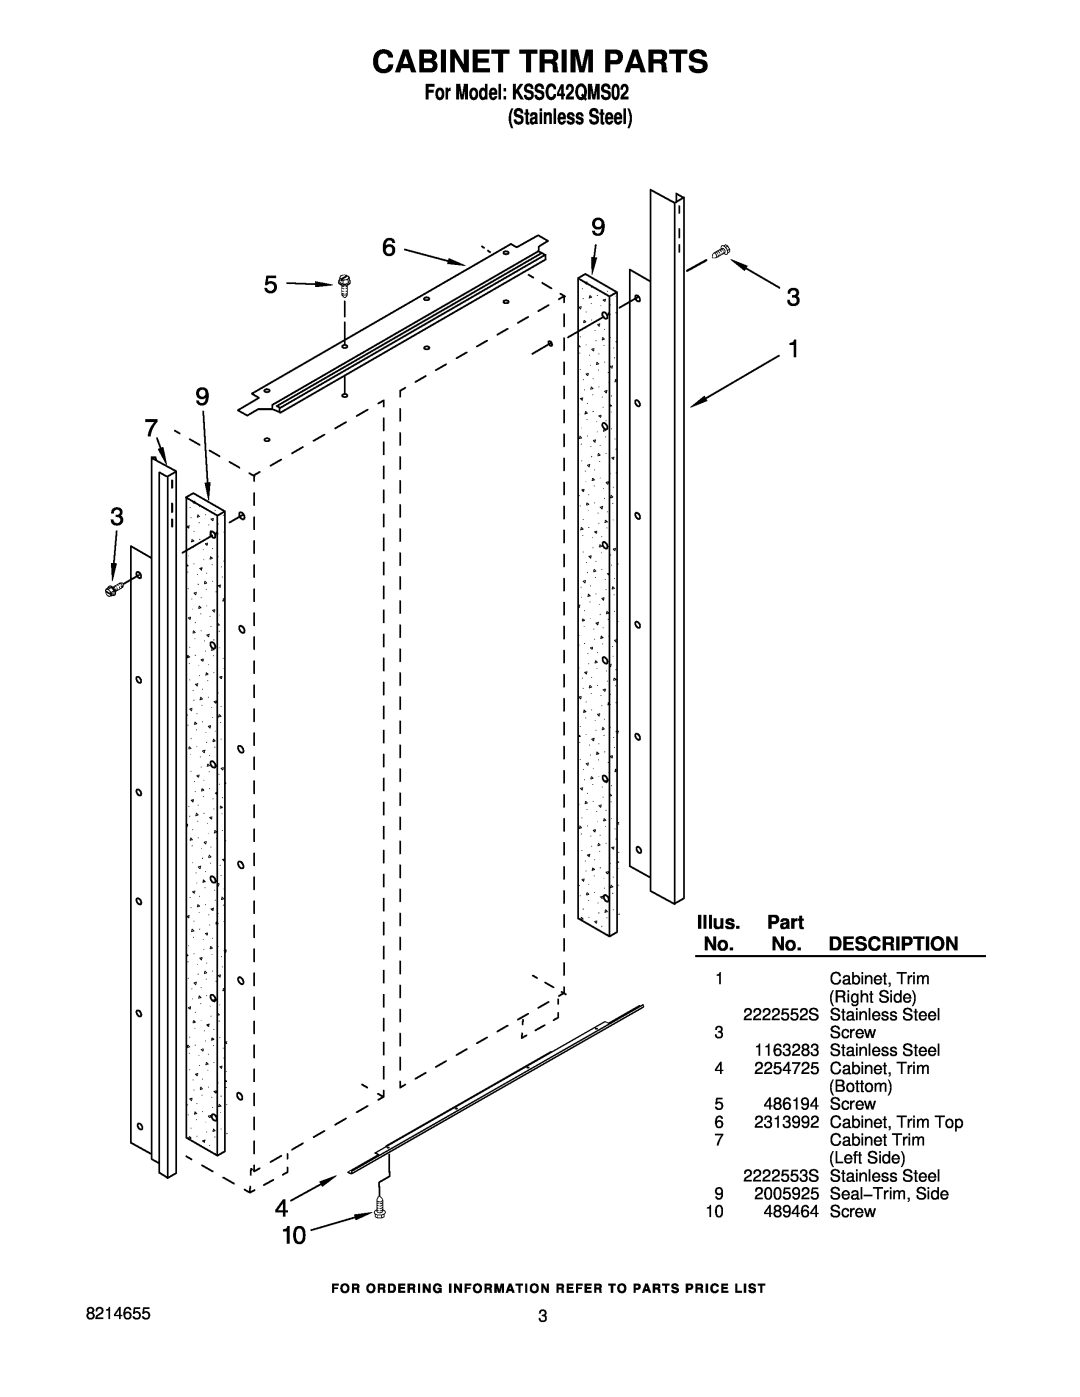 KitchenAid manual Cabinet Trim Parts, For Model KSSC42QMS02 Stainless Steel, Illus, Description 